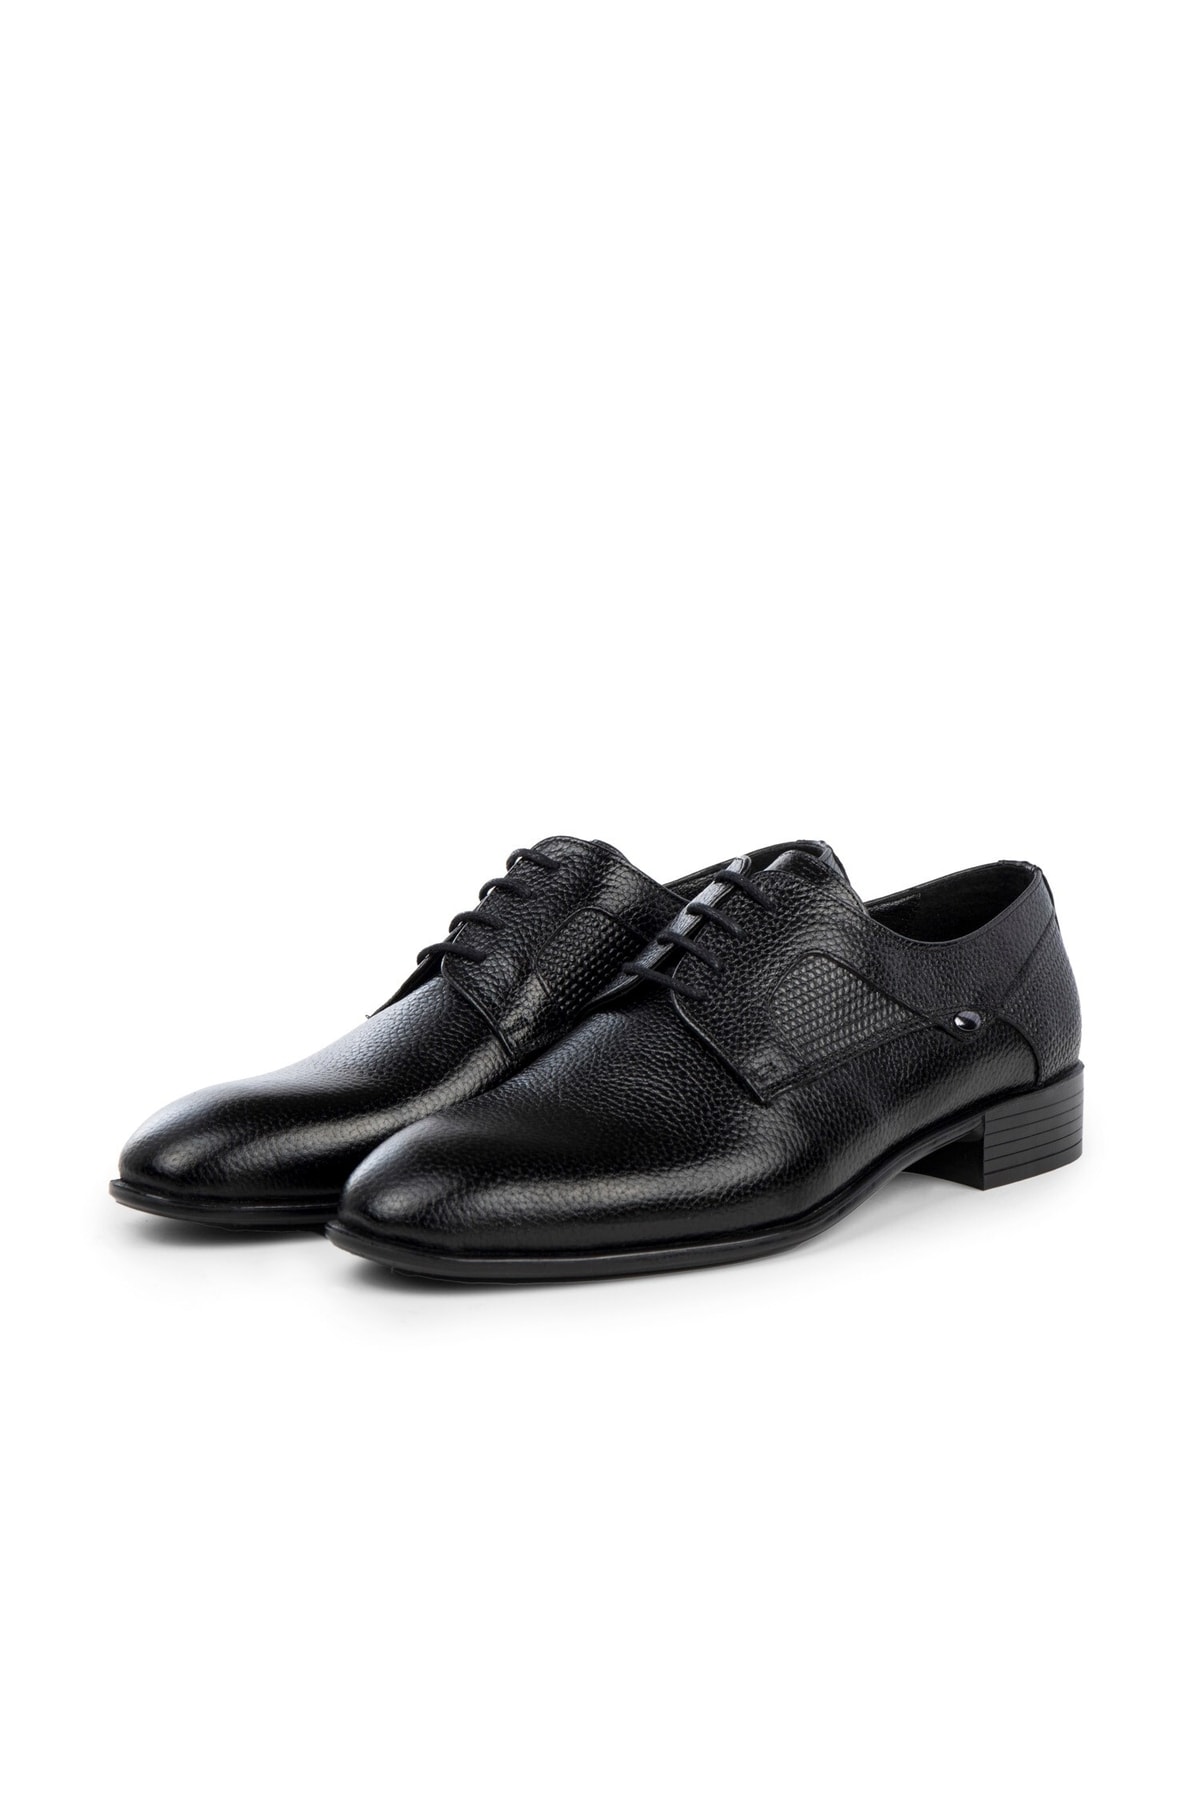 Levně Ducavelli Sace Genuine Leather Men's Classic Shoes, Derby Classic Shoes, Laced Classic Shoes